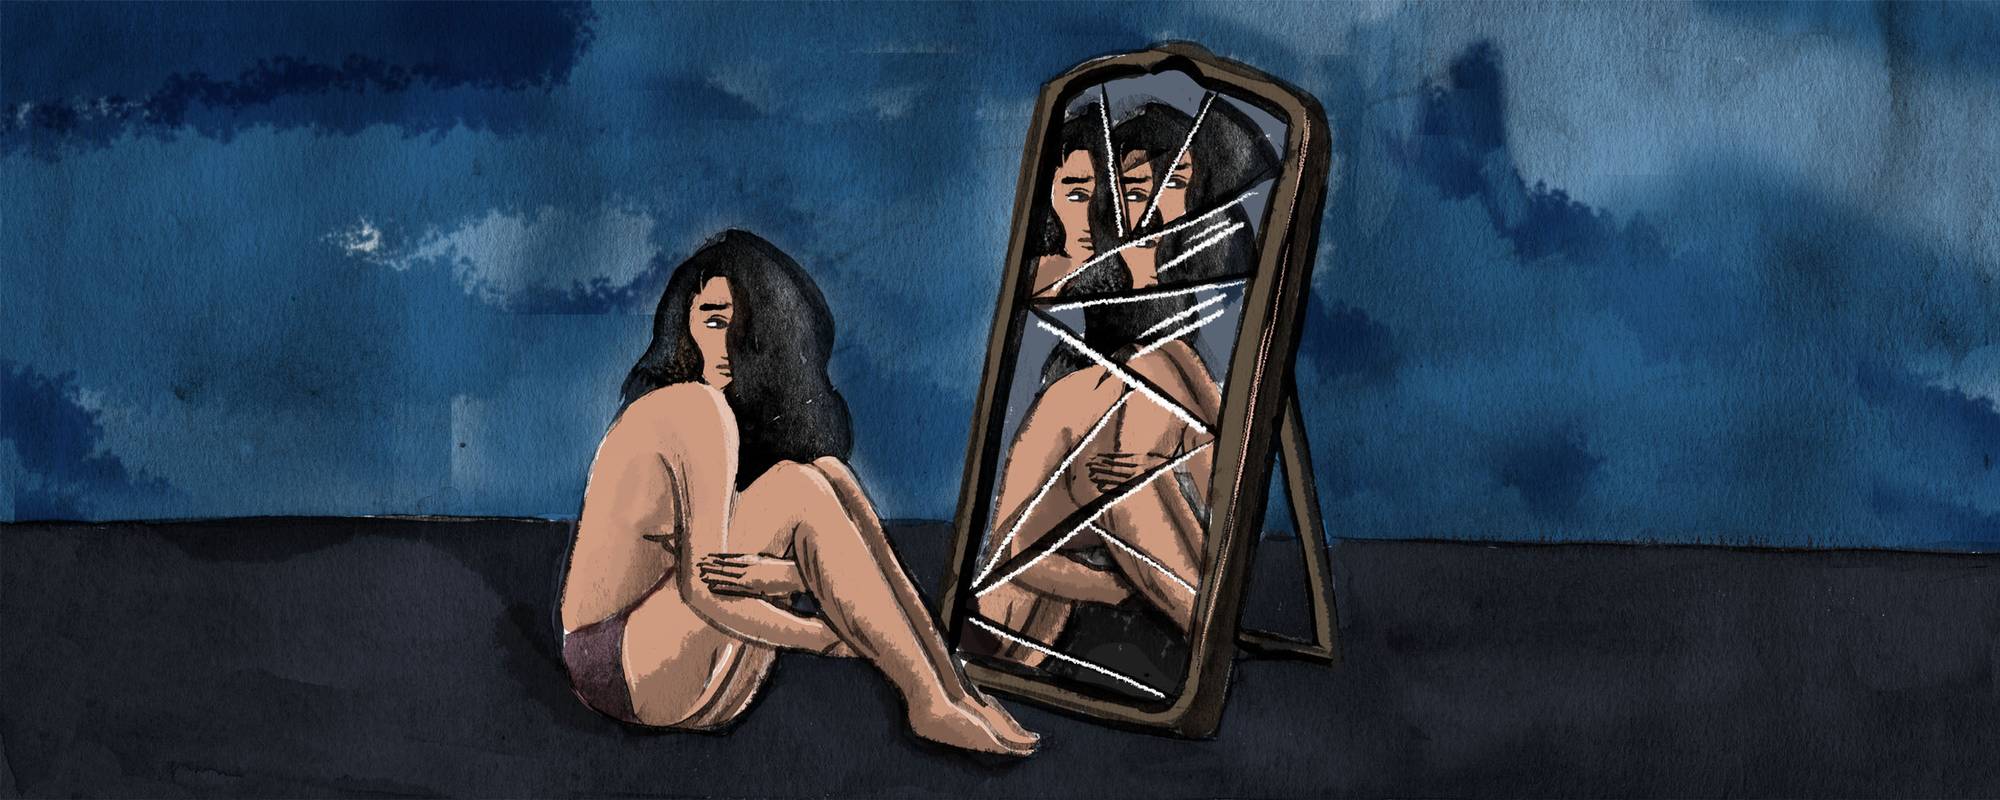 πίνακας με κοπέλα που κοιτάζεται σε σπασμένο καθρέφτη